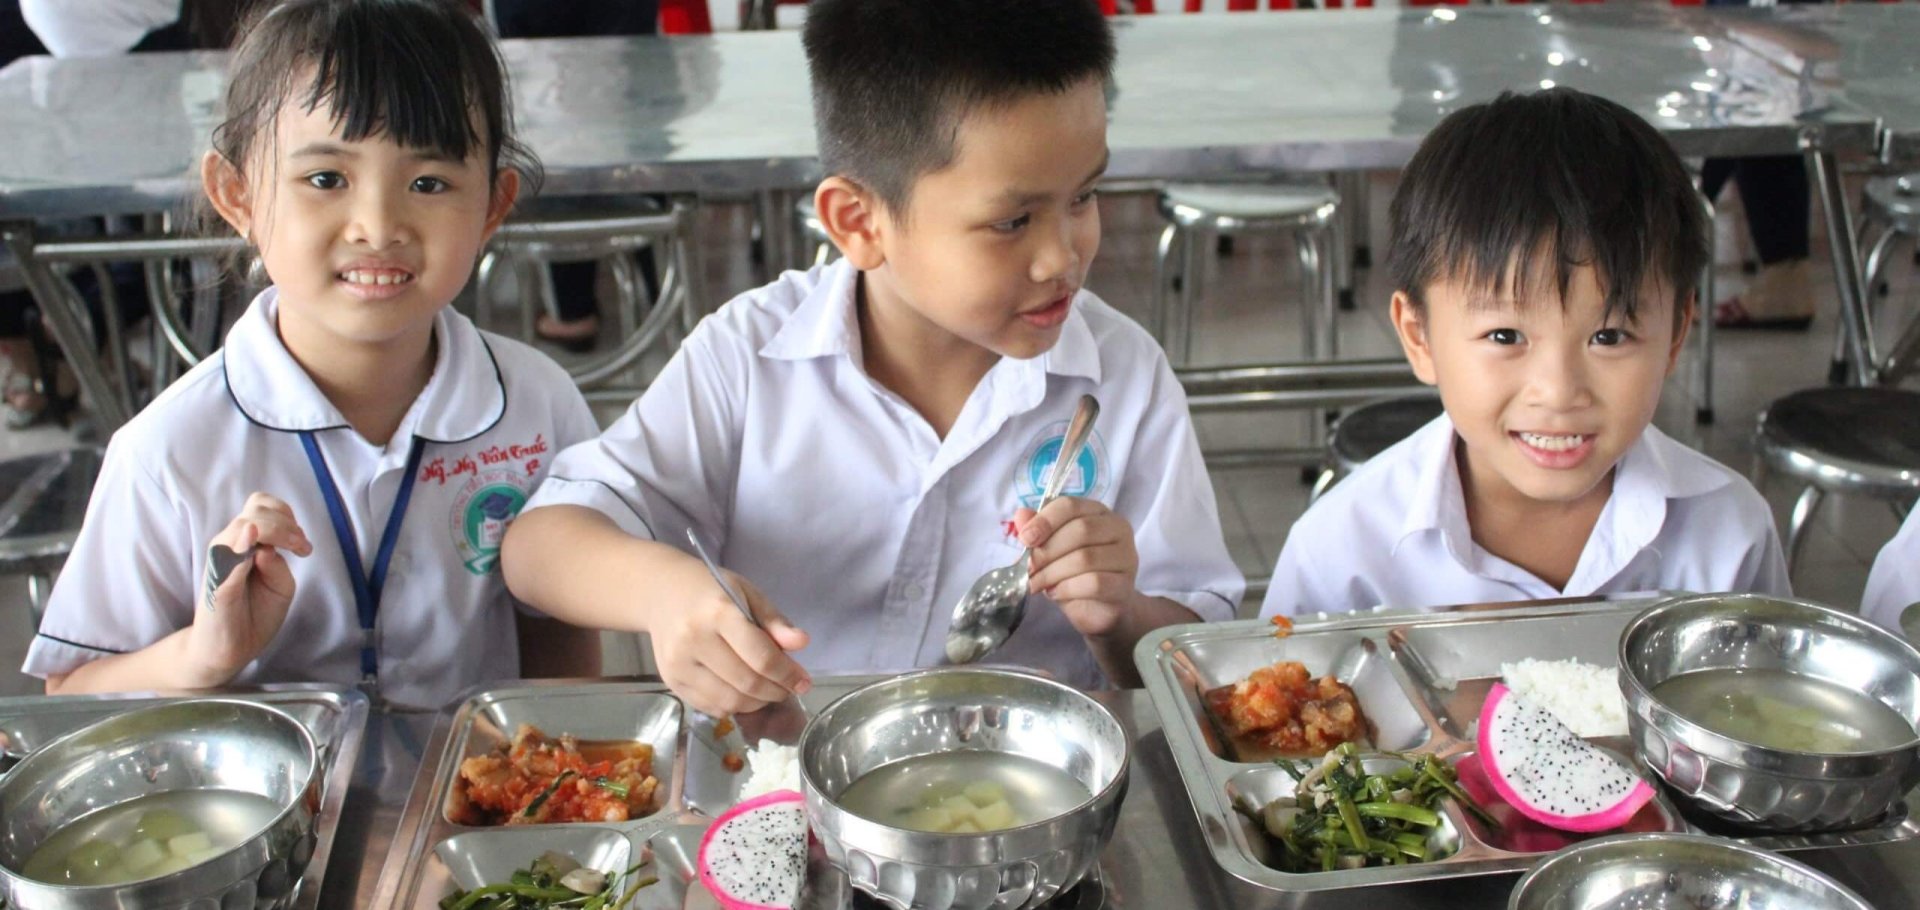 مشروع وجبة مدرسية فيتنام